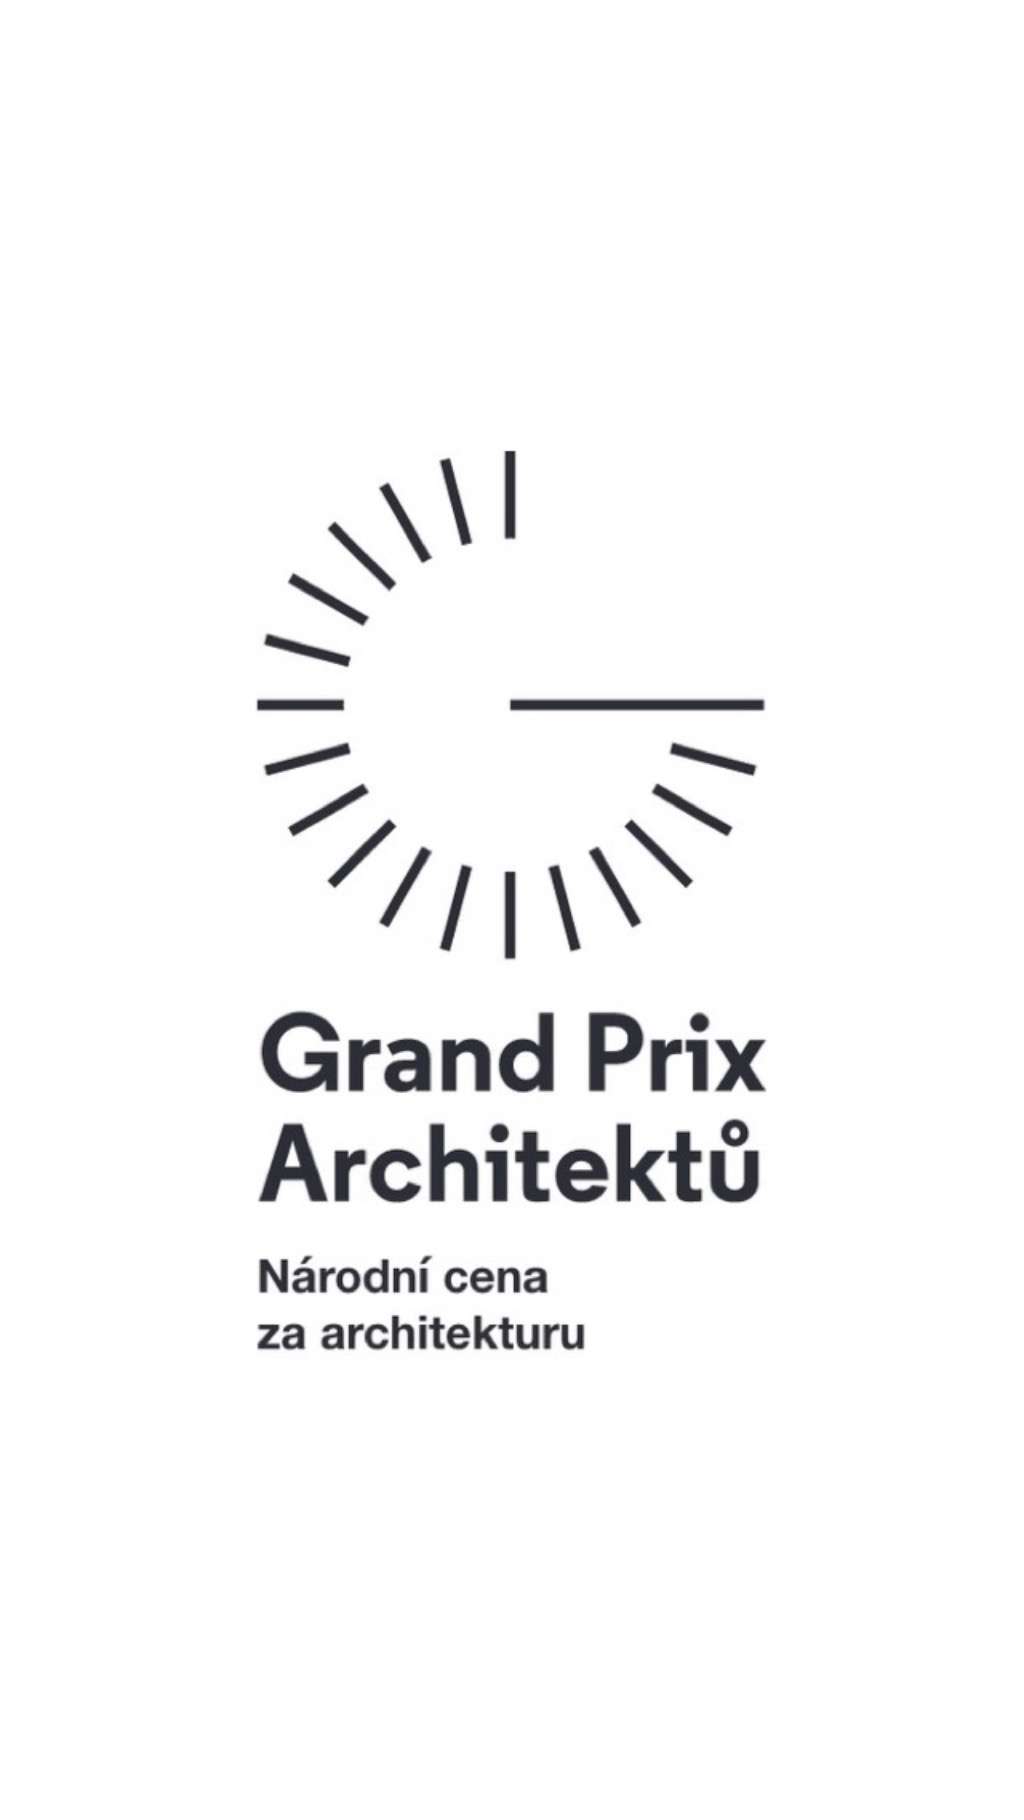 Grand Prix Architektů 2022/ Obec architektů